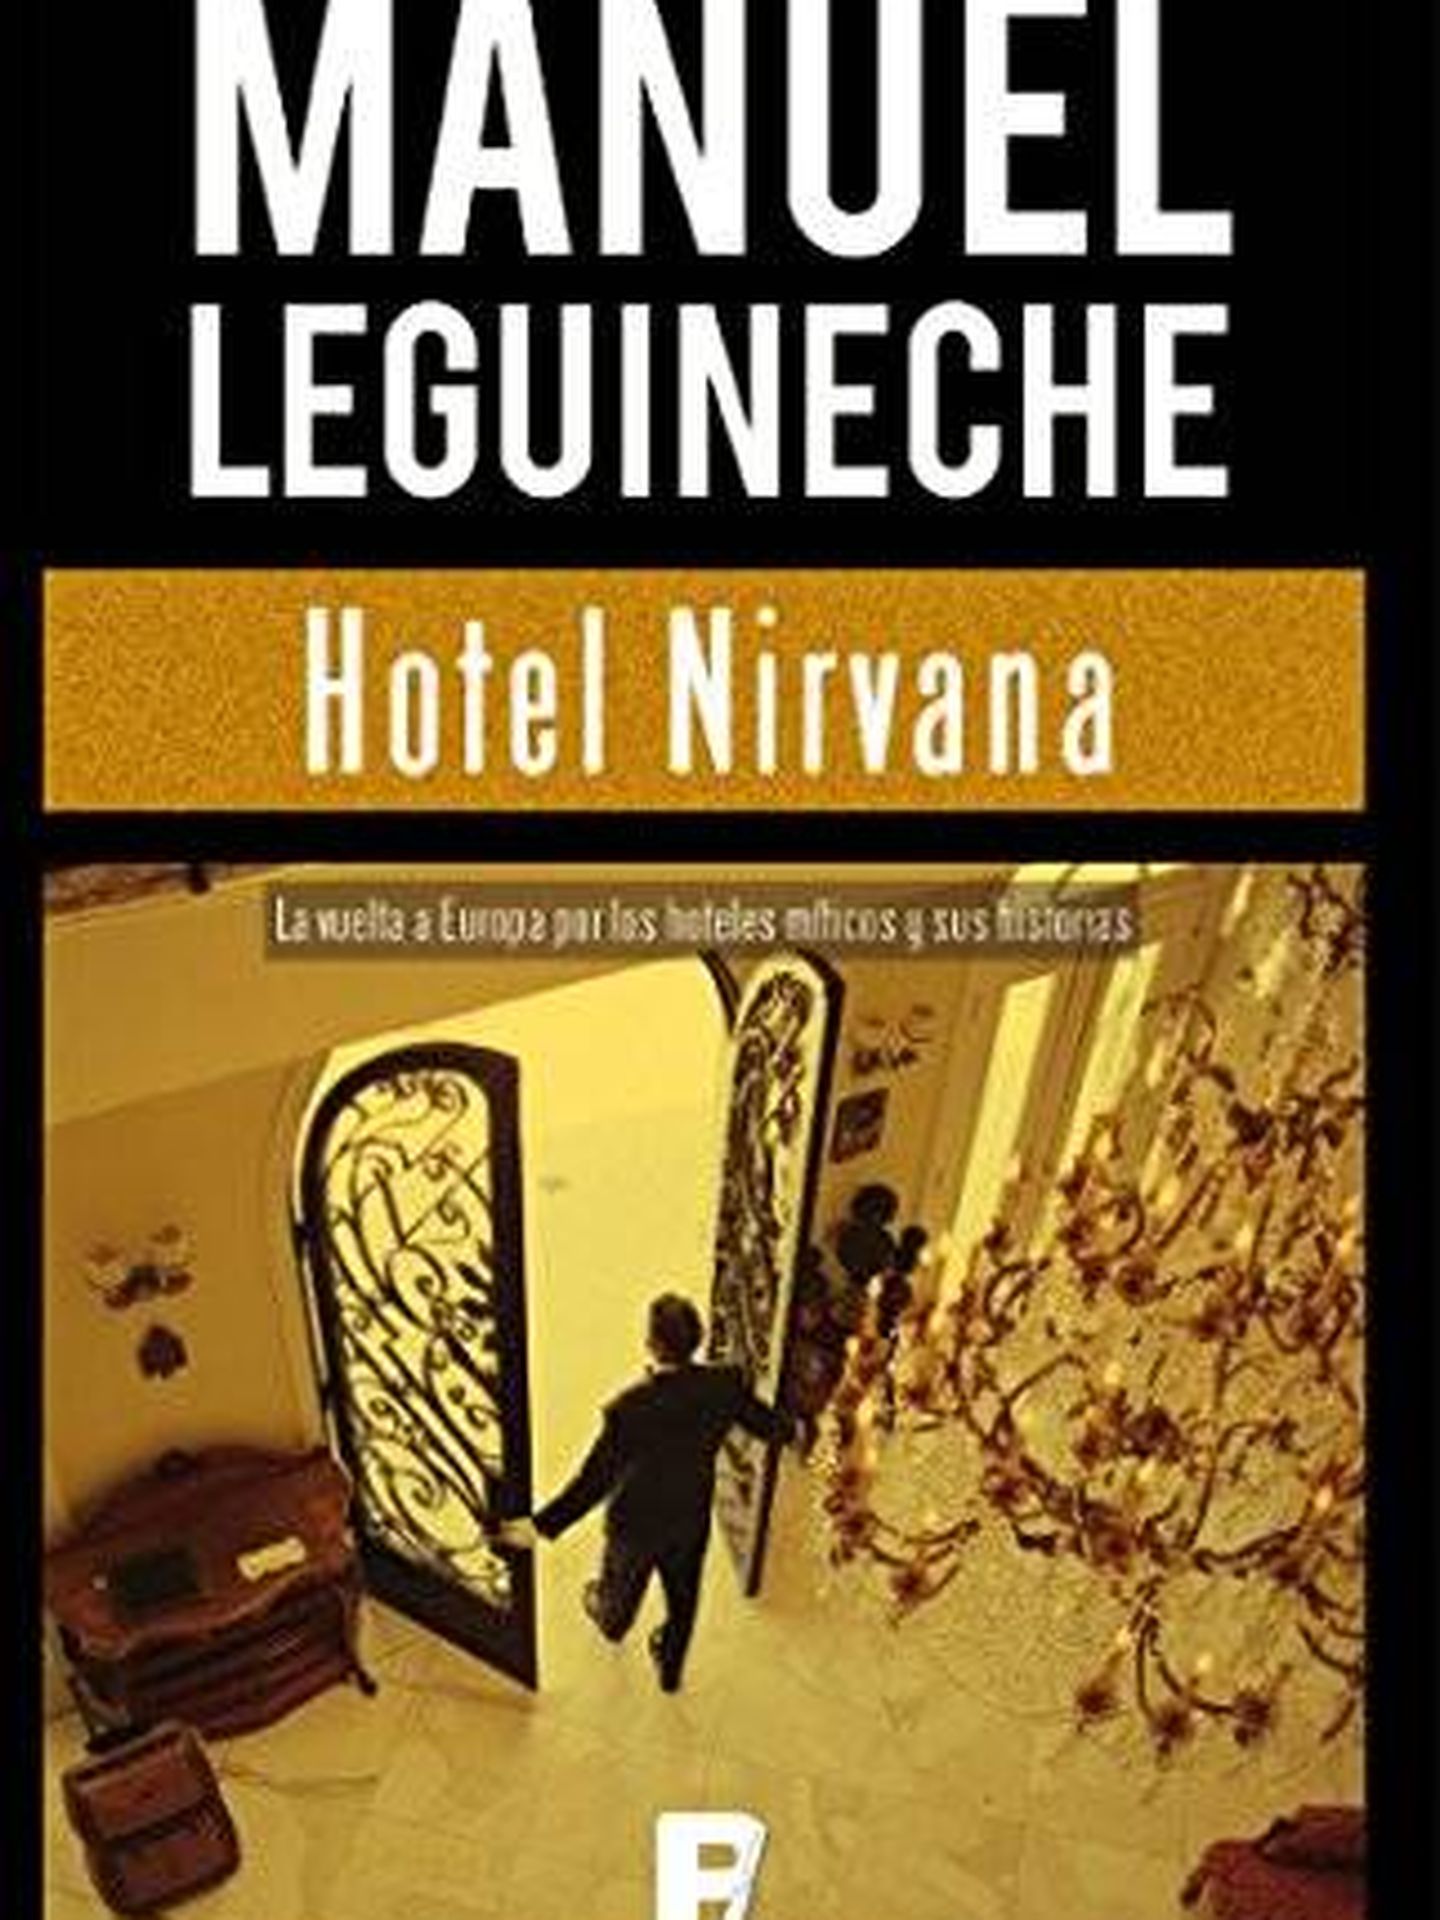 'Hotel Nirvana'.